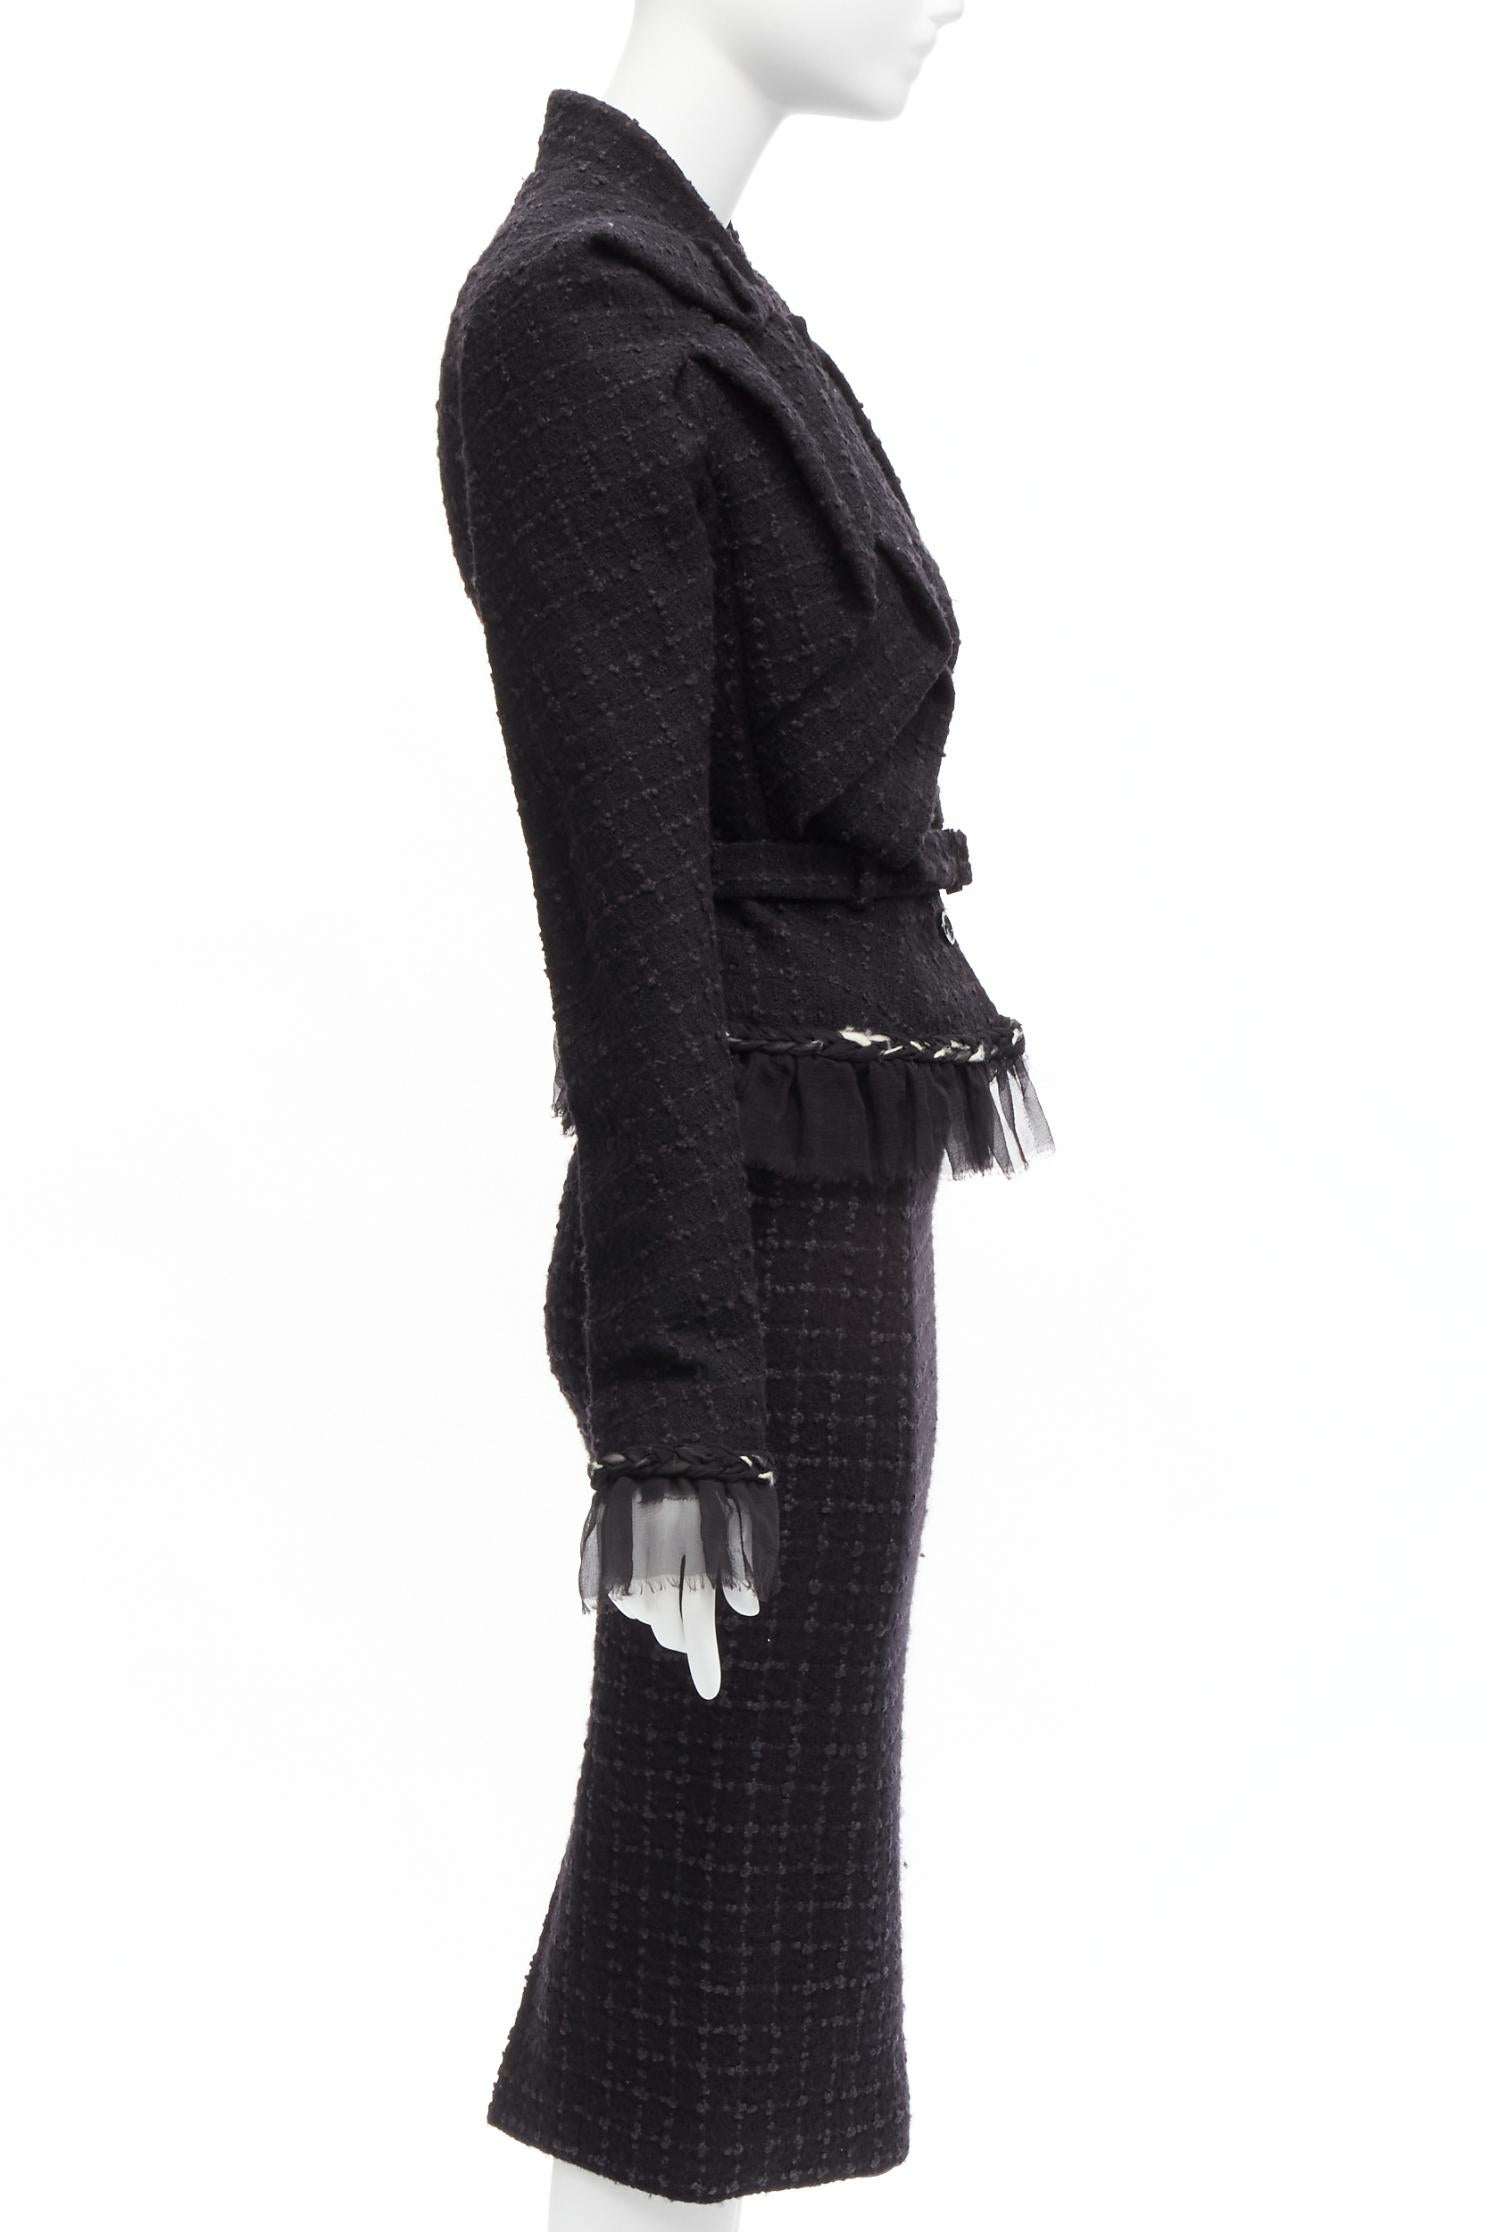 JOHN GALLIANO Vintage  wool tweed braid trim ruffle jacket skirt suit FR40 L 1